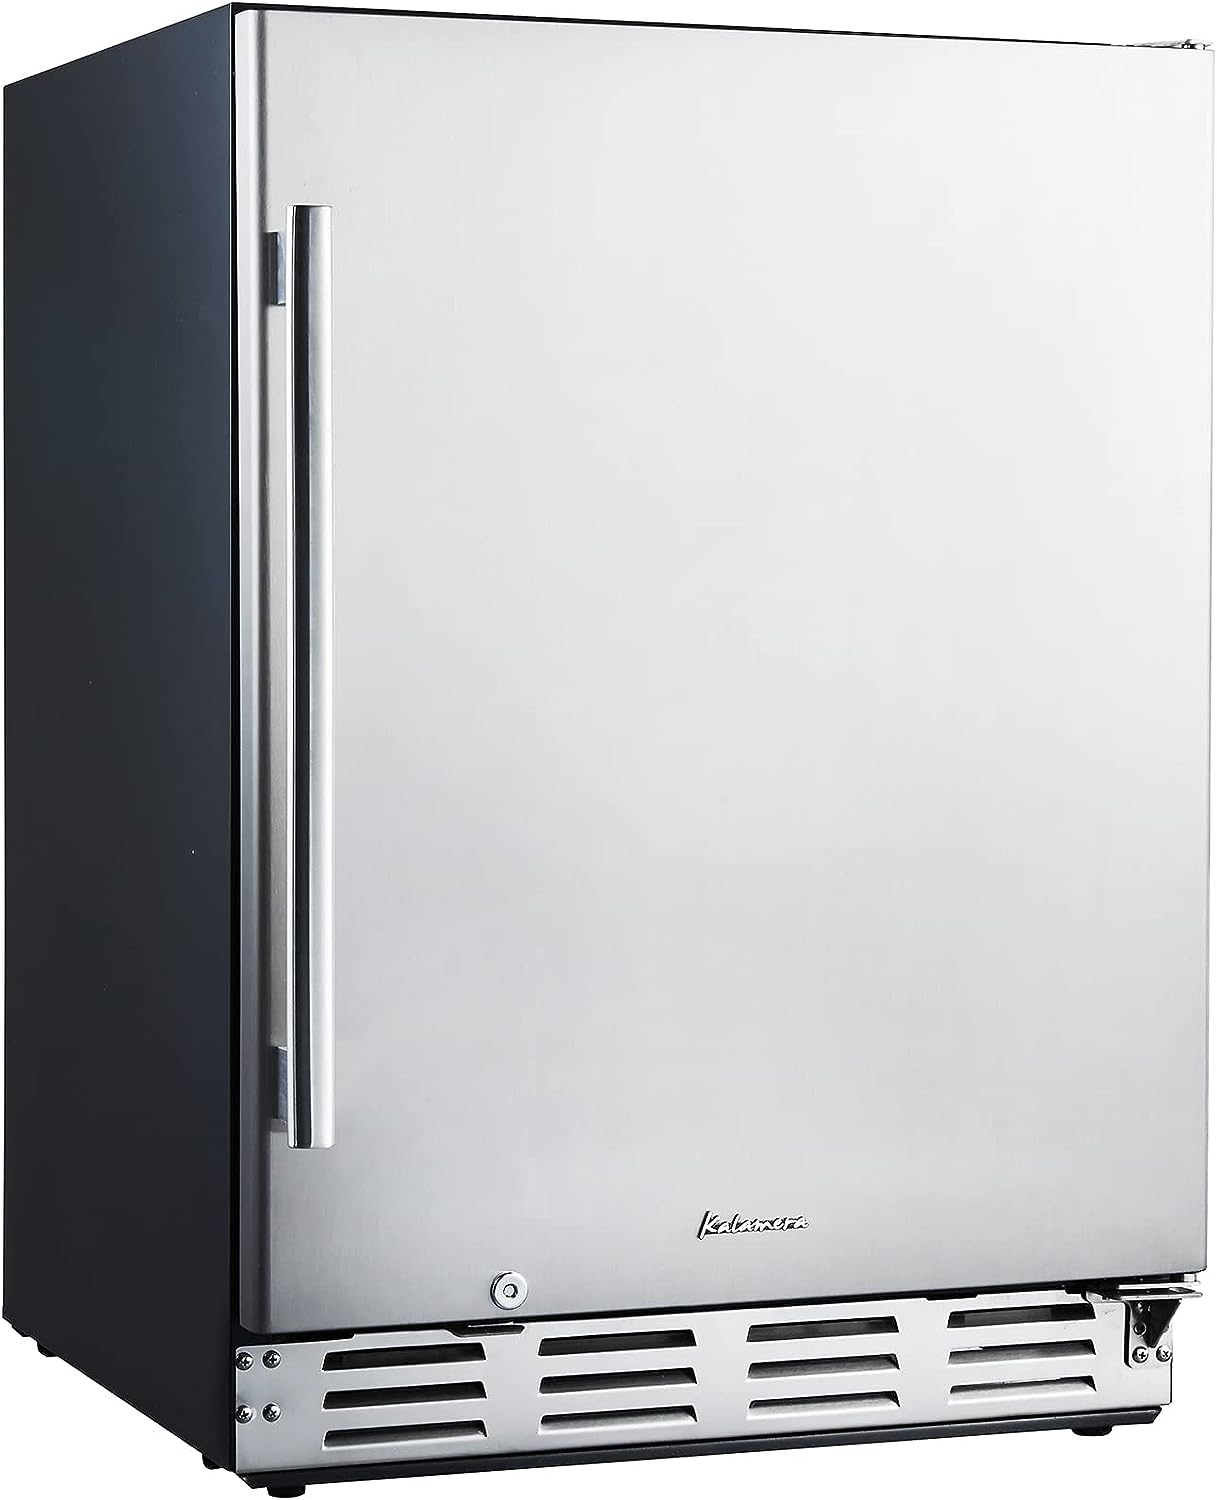 Kalamera Beverage Refrigerator, 24 inch Under Counter Beverage Cooler for 154 Cans - $480